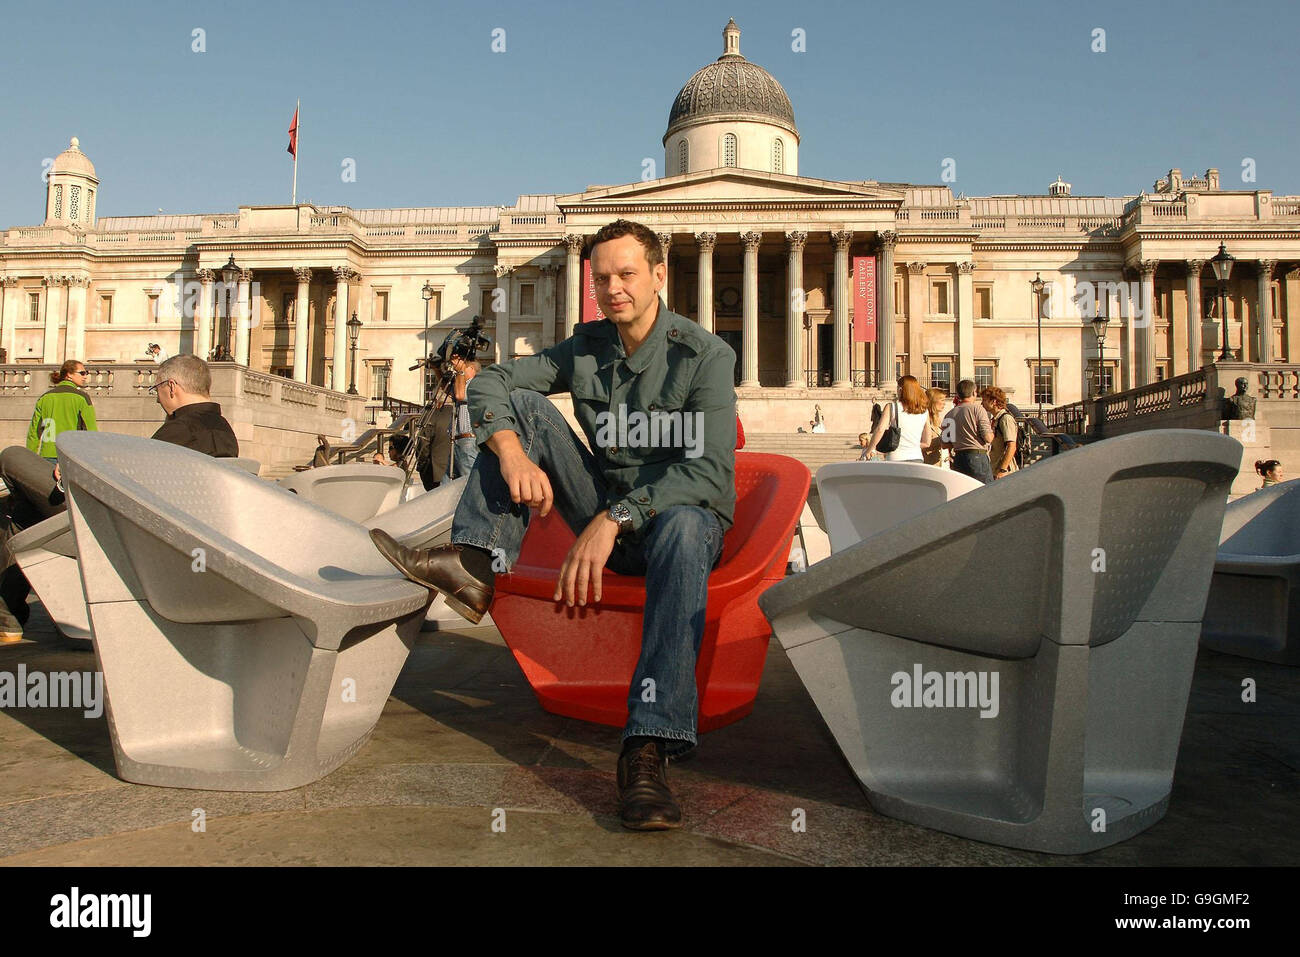 Le designer Tom Dixon est assis dans l'une de ses chaises en polystyrène expansé à Trafalgar Square, dans le centre de Londres. Banque D'Images